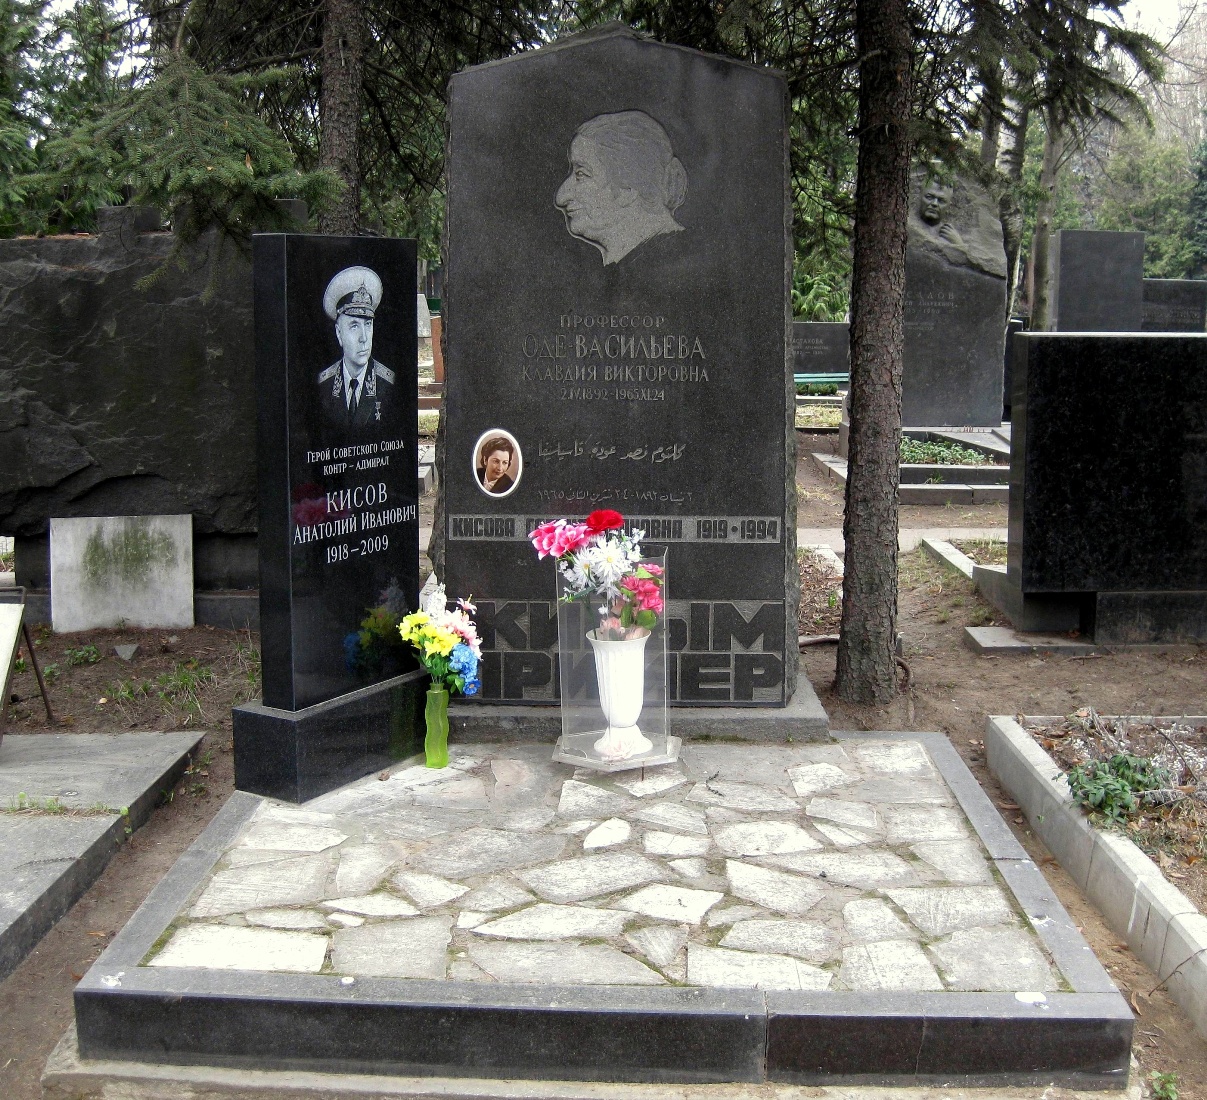 Памятник на могиле Оде-Васильевой К.В. (1892-1965) и Кисова А.И. (1918-2009), на Новодевичьем кладбище (6-29-4).